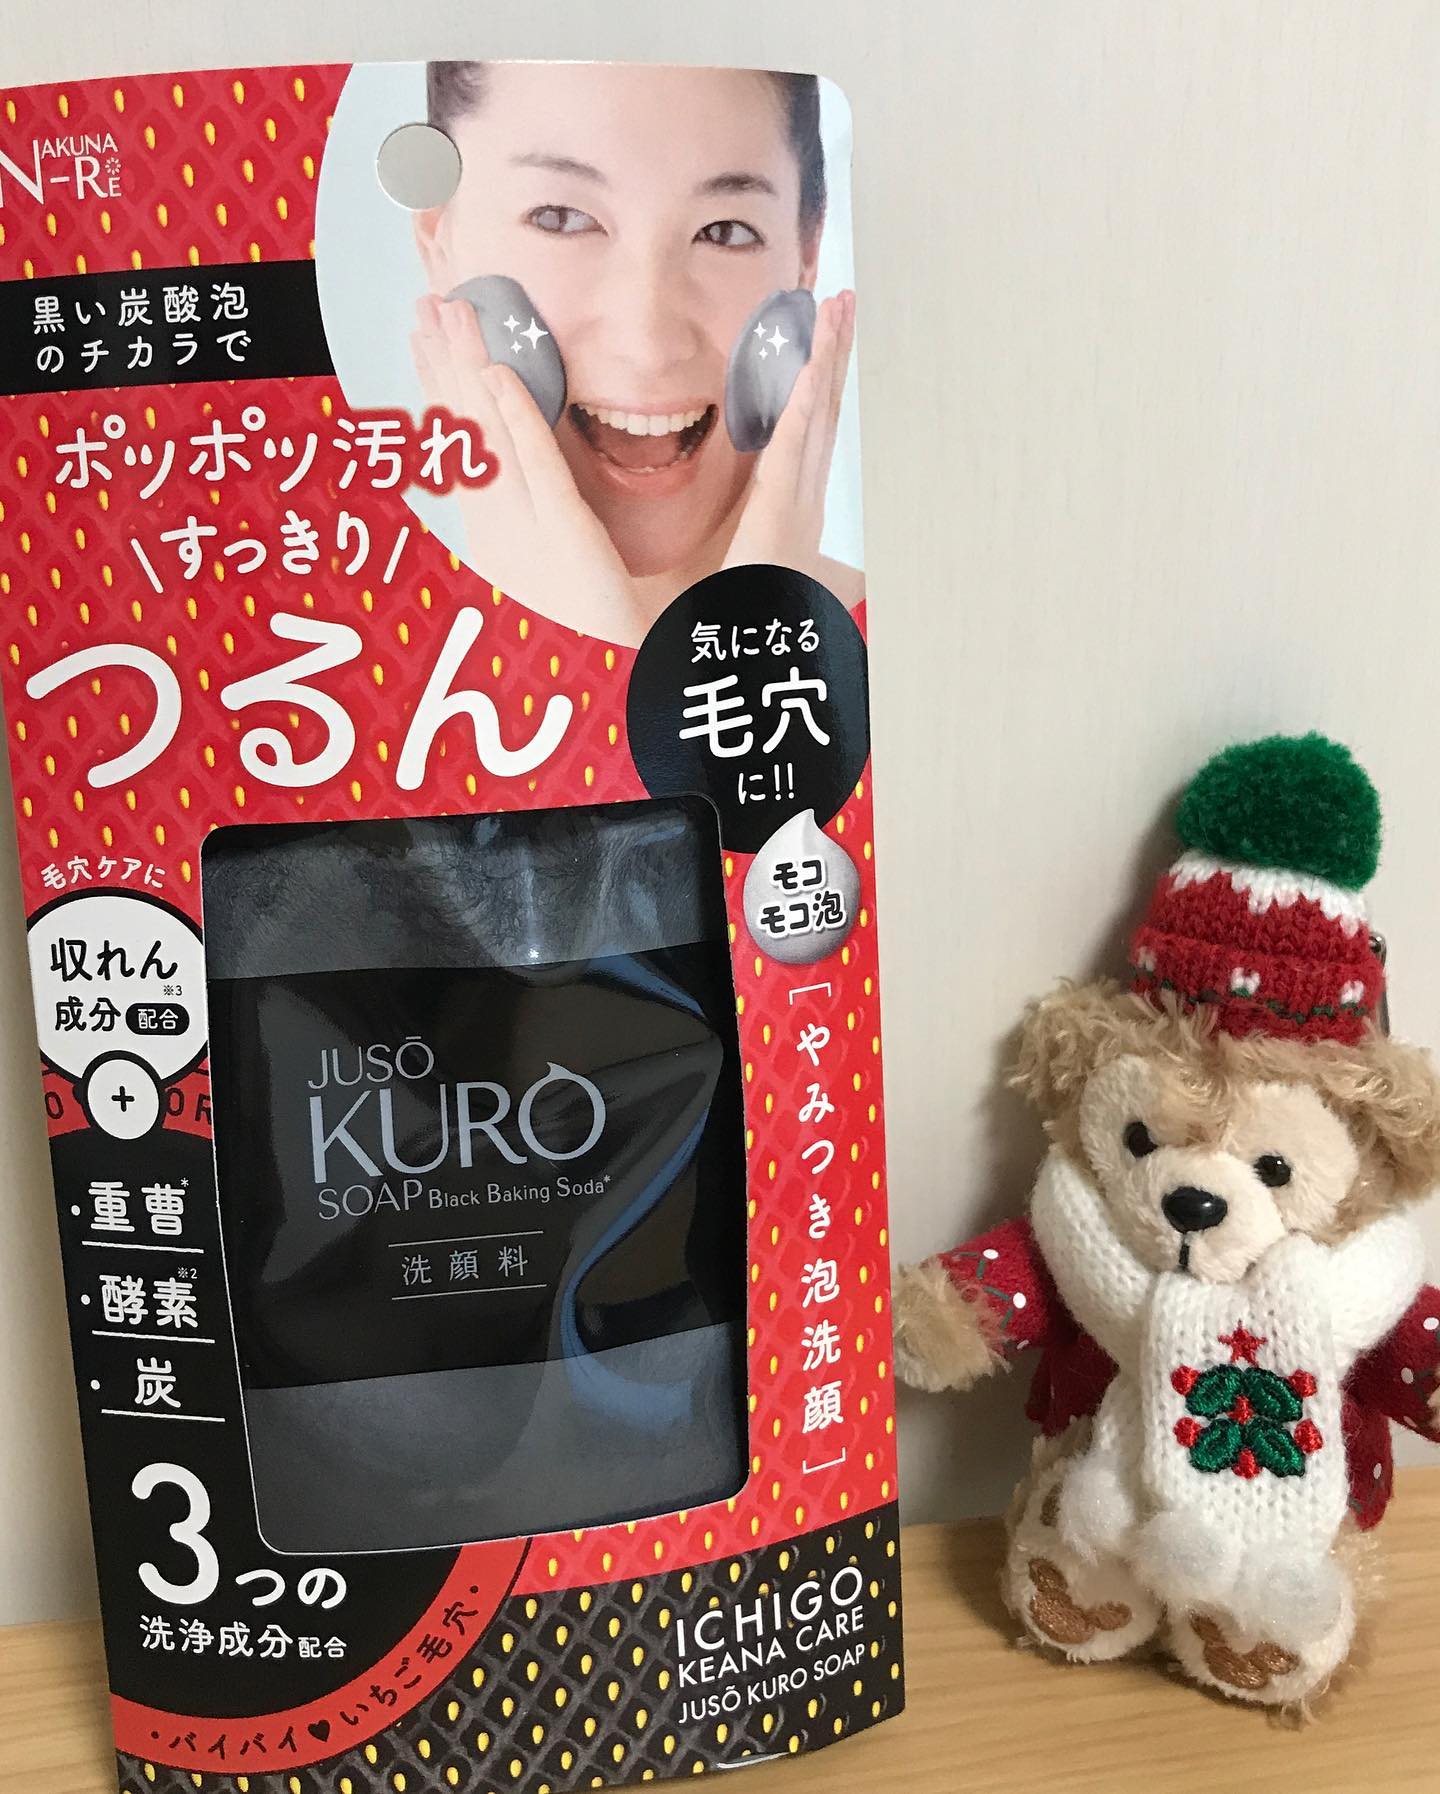 口コミ投稿：● JUSO KURO SOAP［重曹洗顔］使ってみました。使用方法に2.3センチ出すって書いてあ…